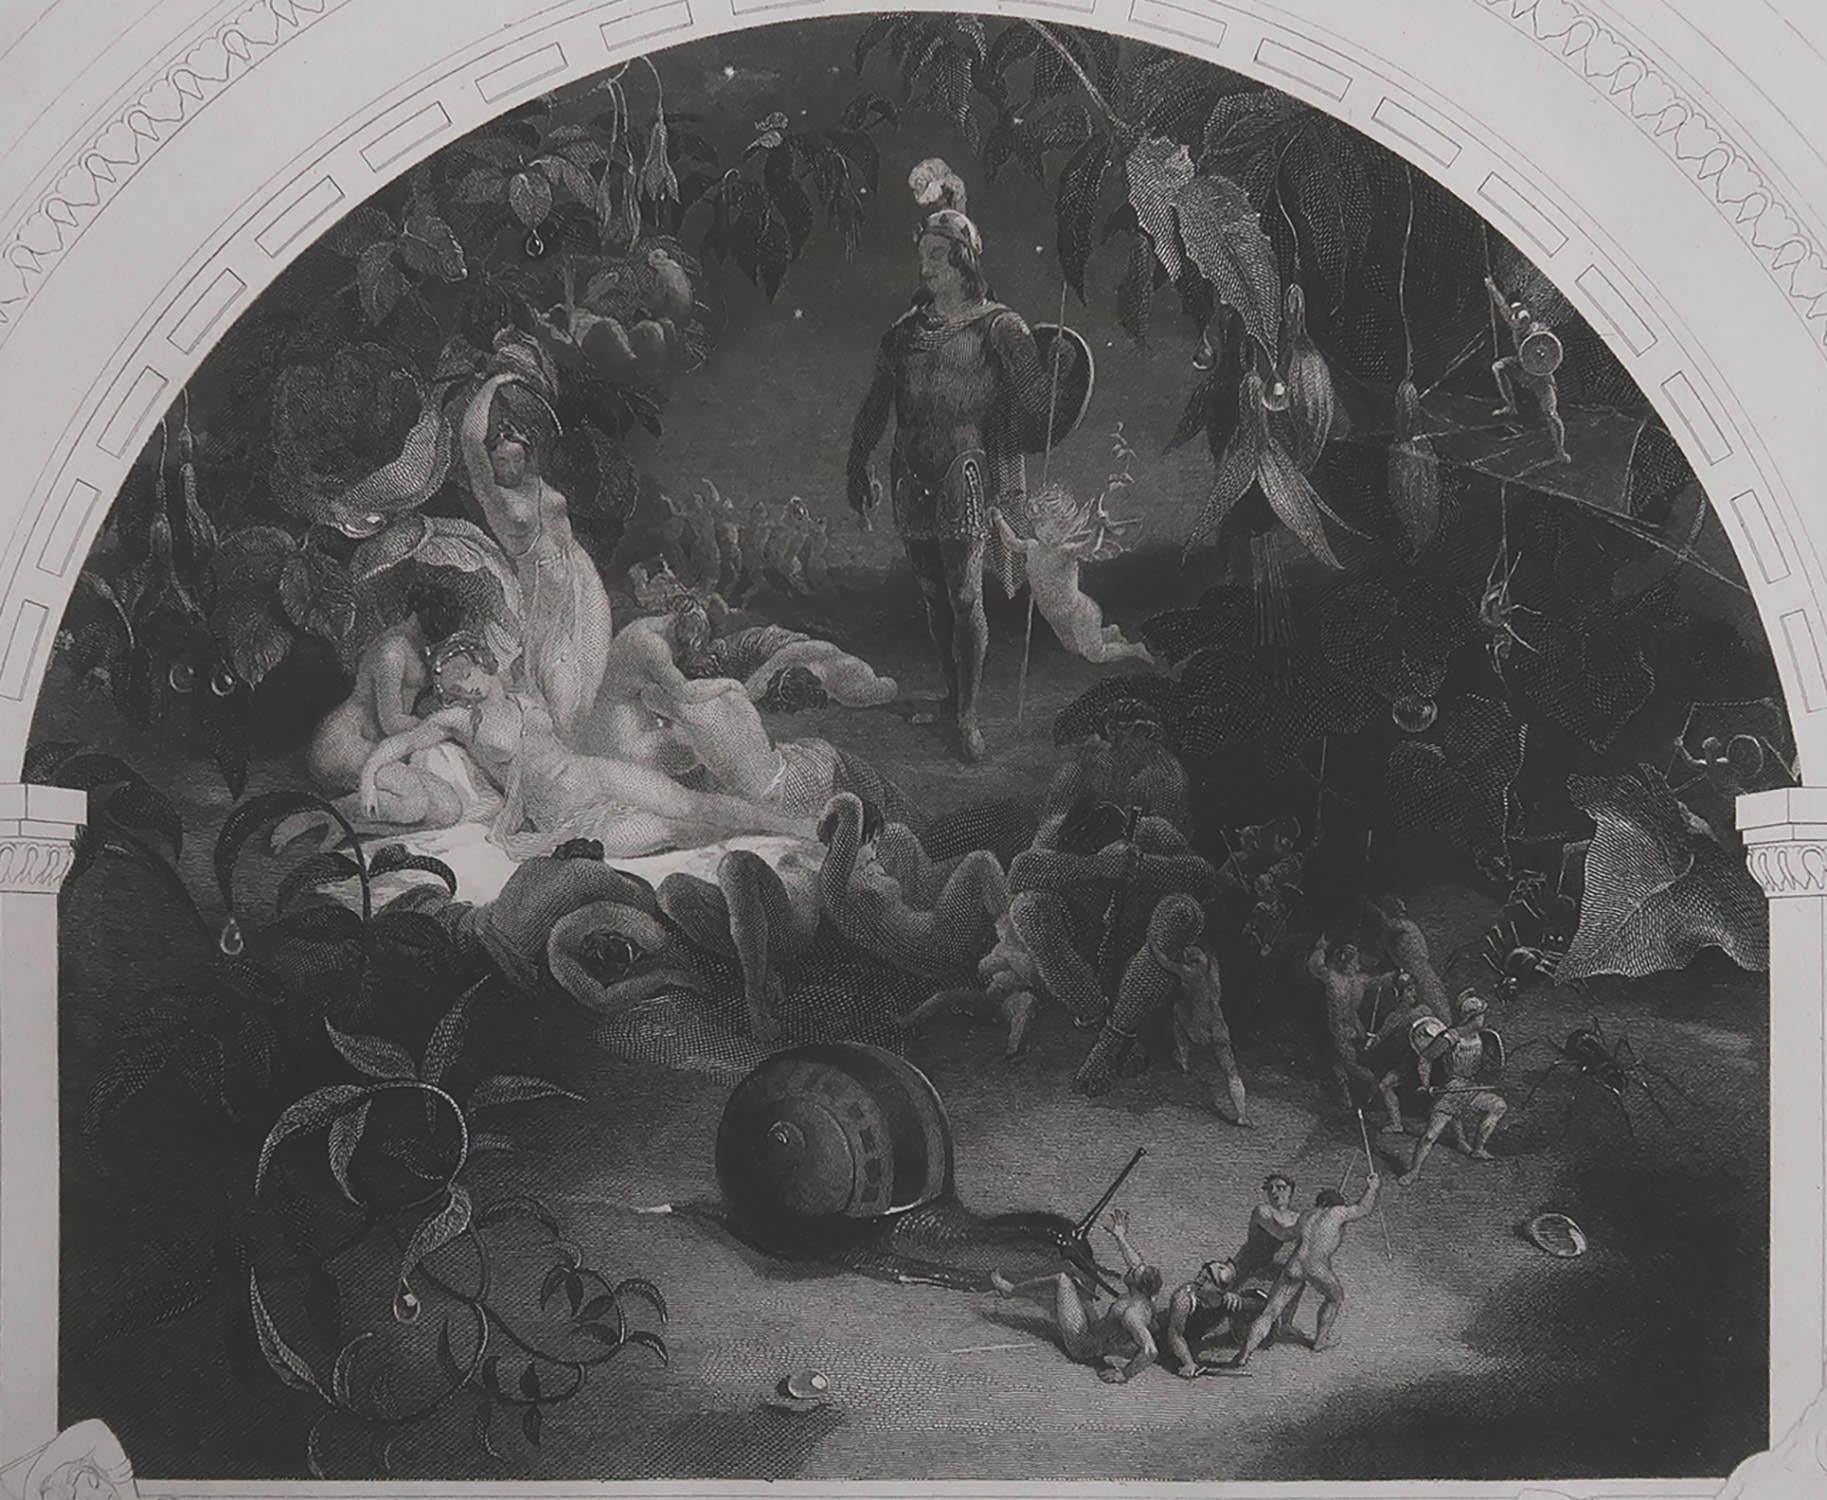 Merveilleuse image des fées du Songe d'une nuit d'été

Gravure sur acier d'après R.Steele

Publié vers 1850

Non encadré.

